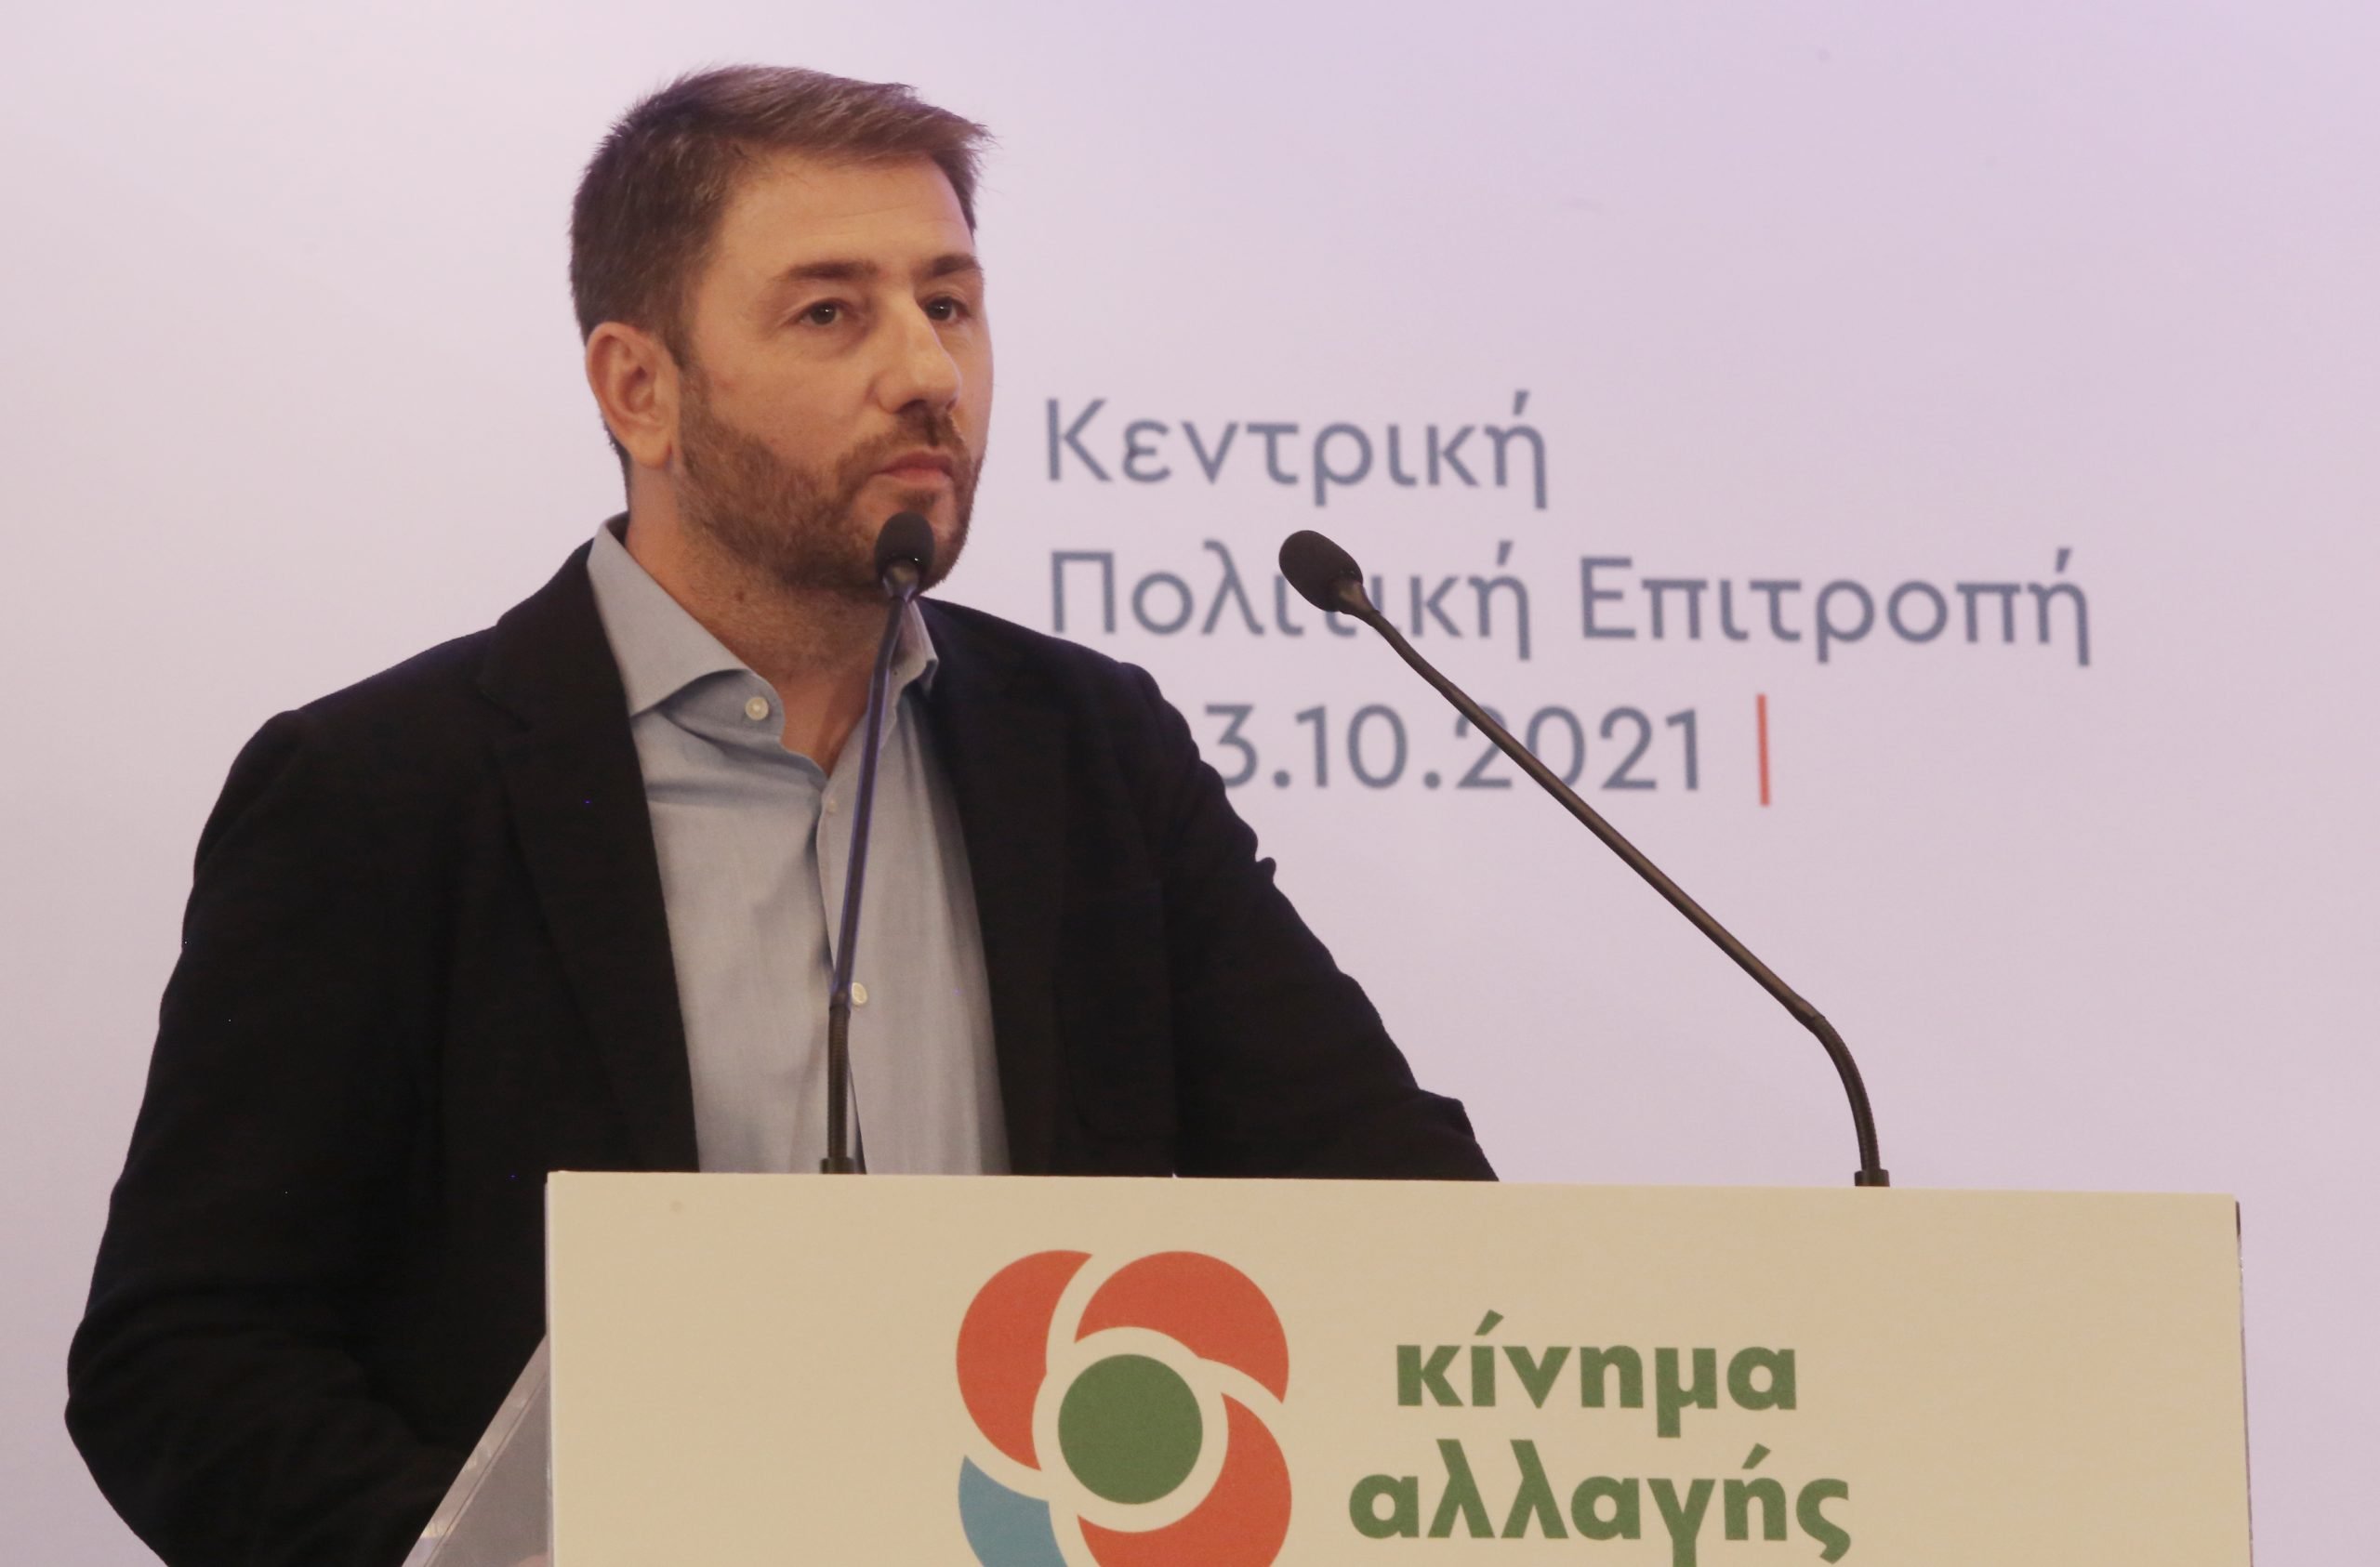 Ν. Ανδρουλάκης: Η μάχη για να μεγαλώσει το ΠΑΣΟΚ θα γίνει στην κοινωνία